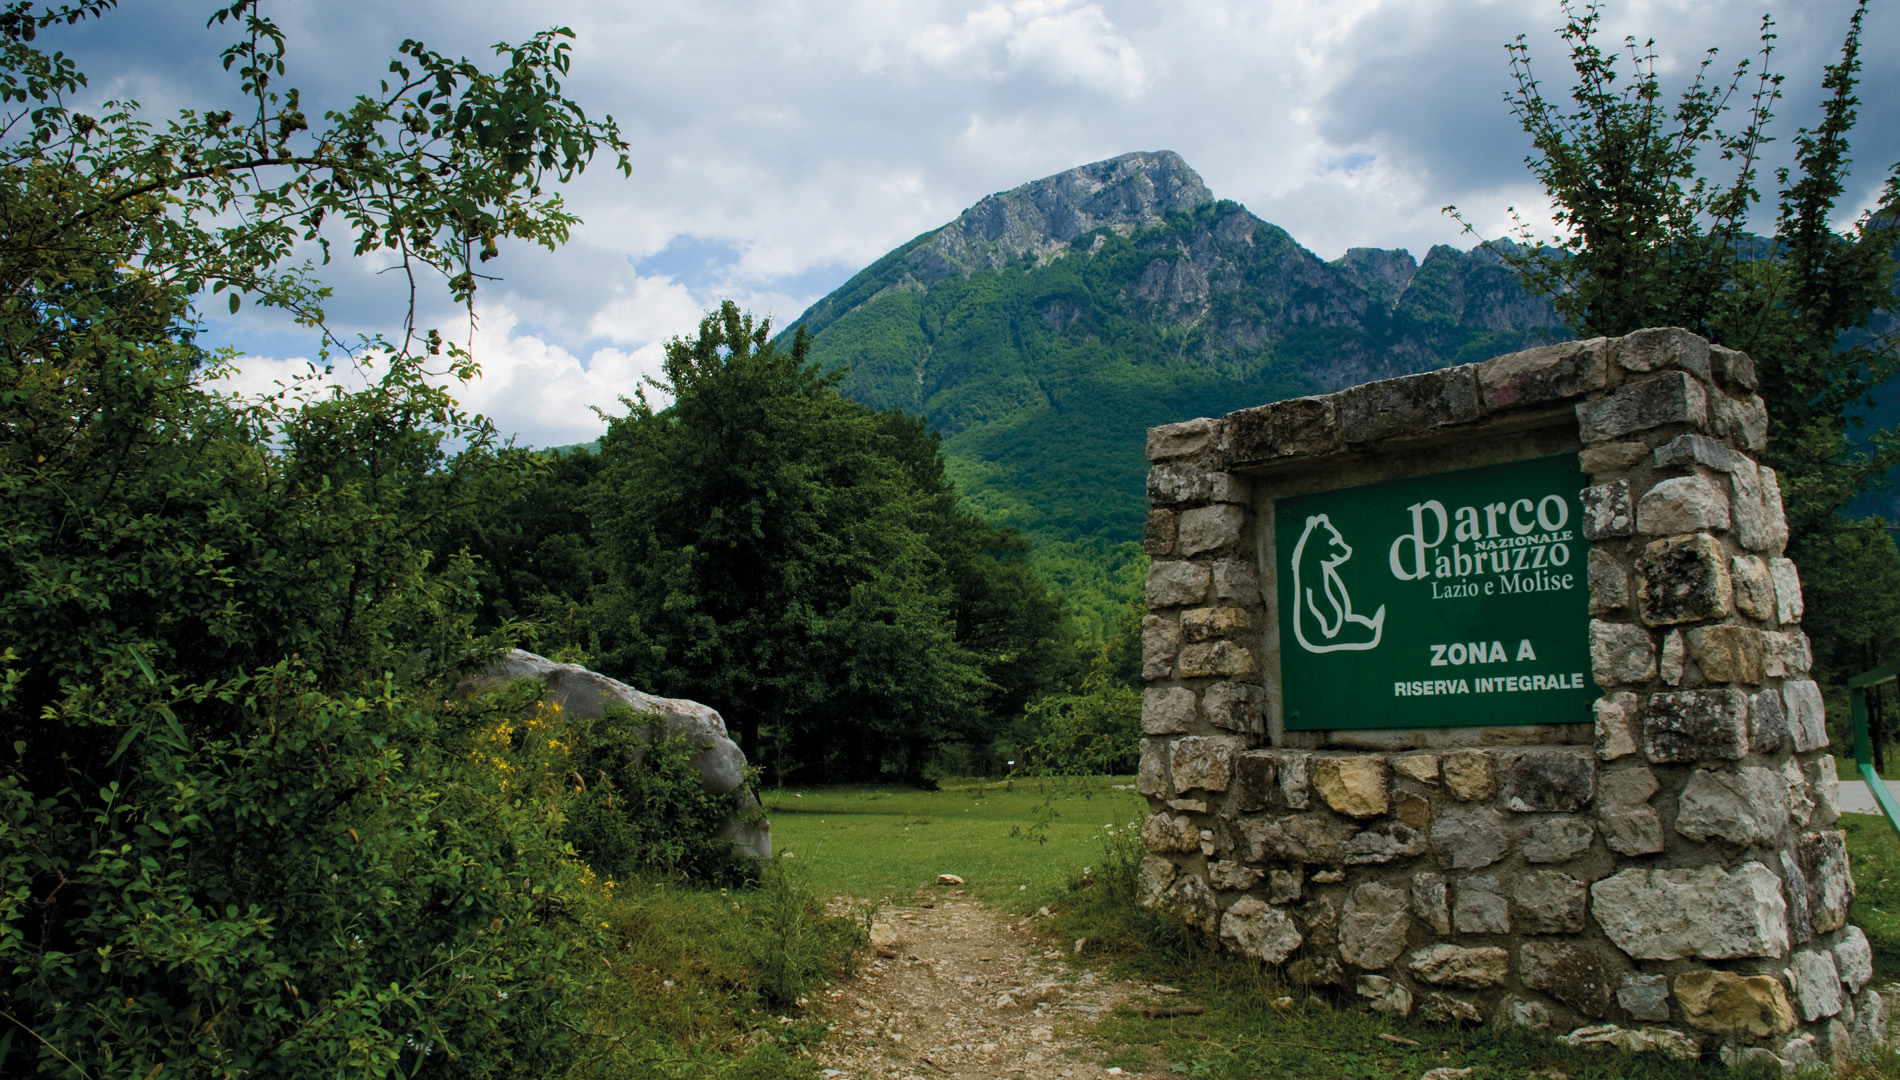 La Regione Abruzzo approva le misure di conservazione sito specifiche del SIC "Parco Nazionale D'Abruzzo"